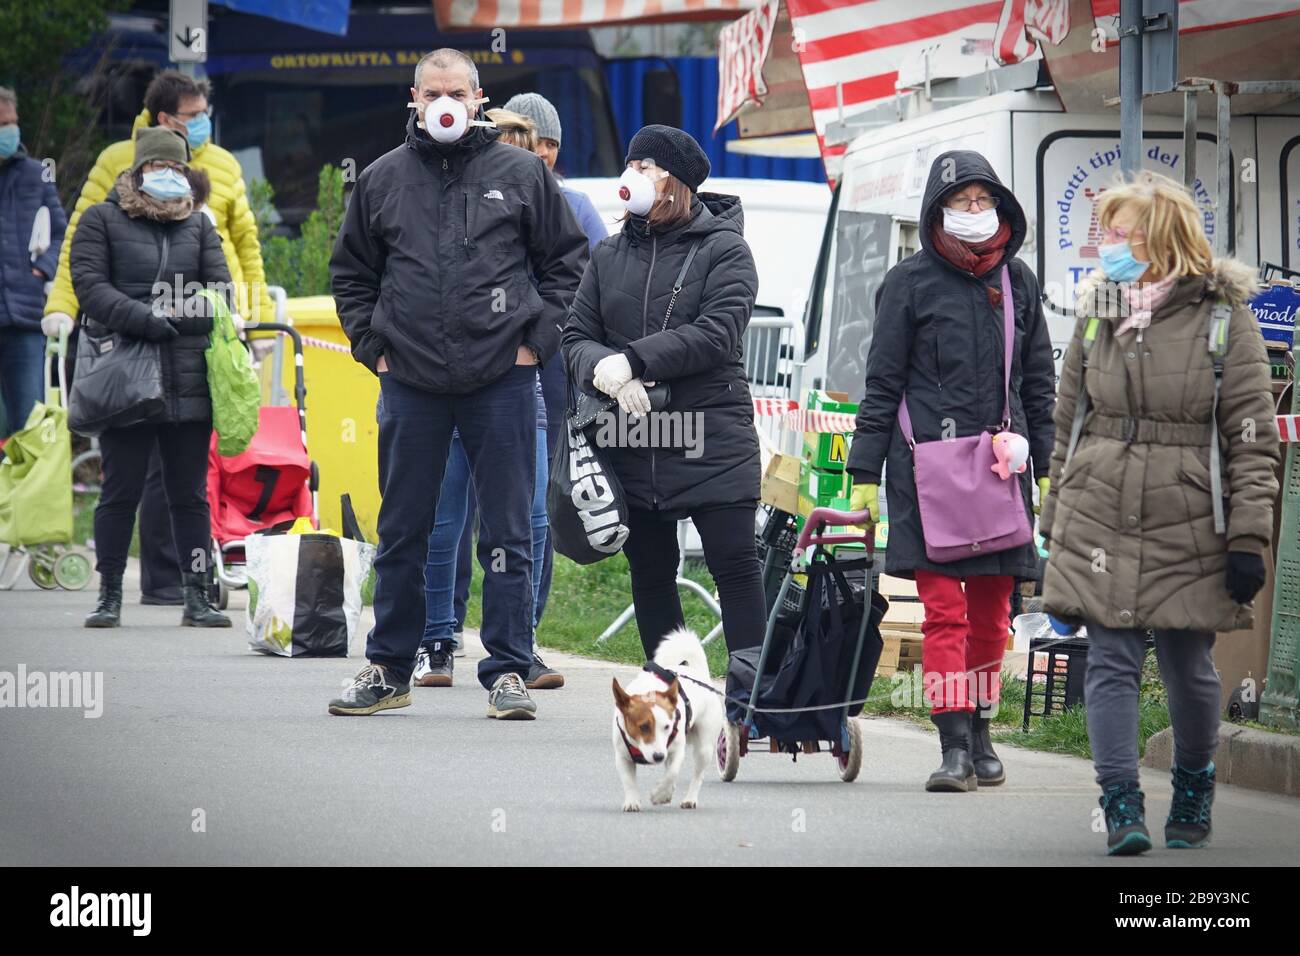 Leute, die Schlange stehen, um einzukaufen, warten auf den Markt im Freien. Soziale Distanzierung. Vorbeugende Maßnahmen. Turin, Italien - März 2020 Stockfoto